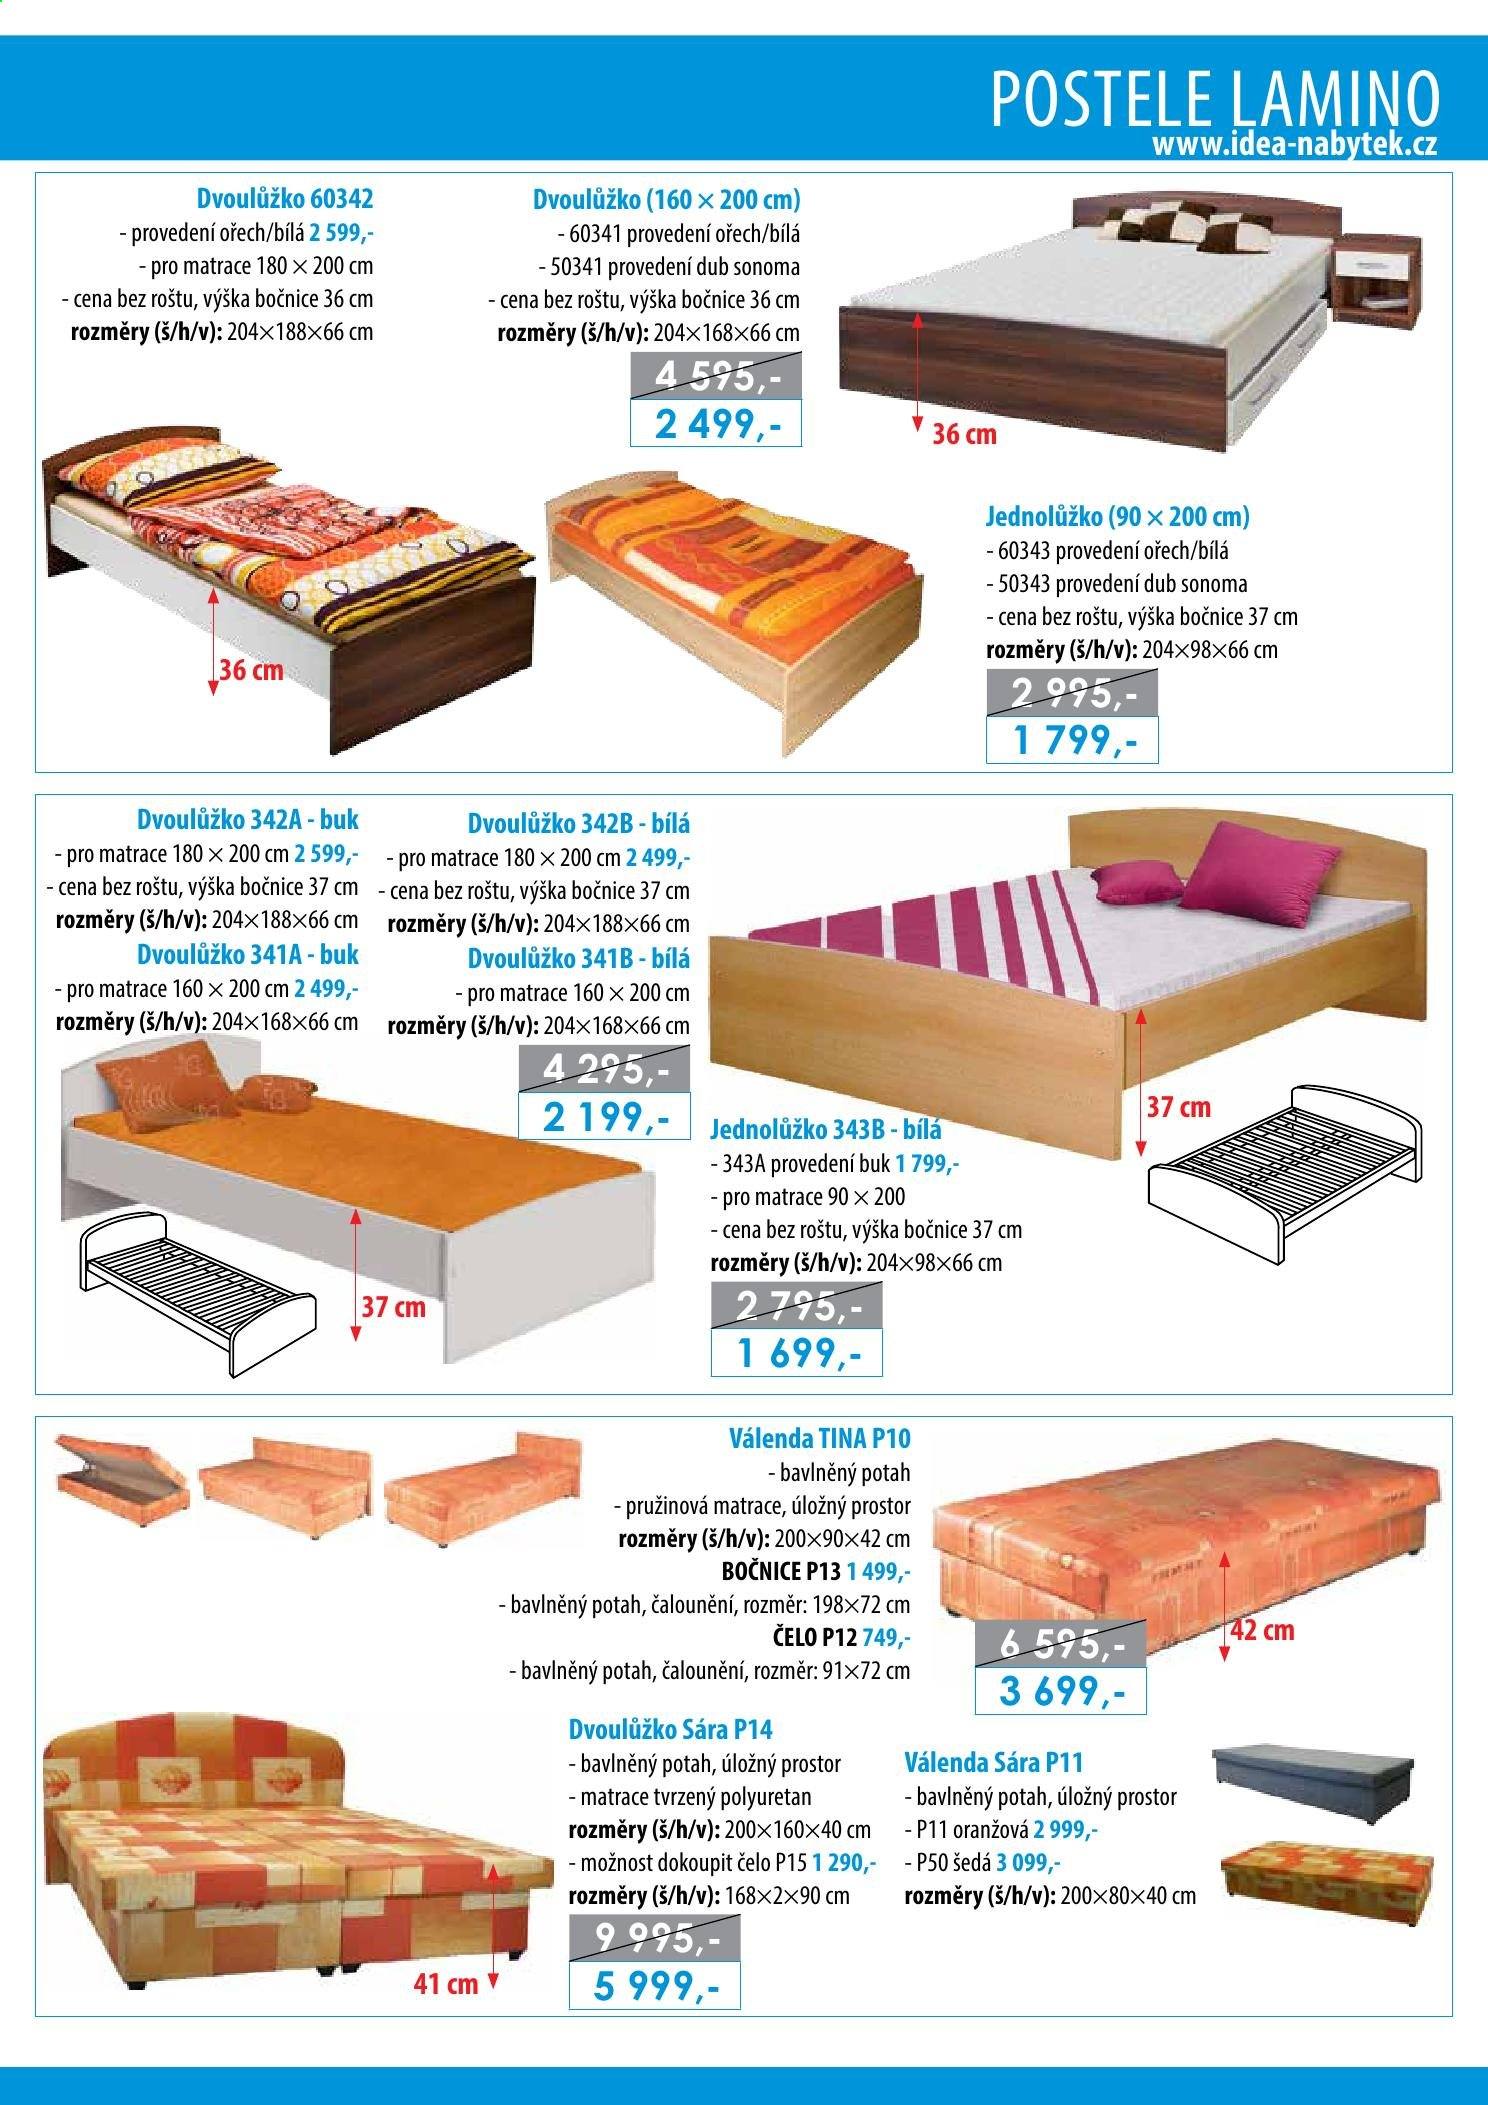 thumbnail - Leták IDEA nábytek - Produkty v akci - válenda, dvoulůžko, postel, matrace, pružinová matrace. Strana 13.